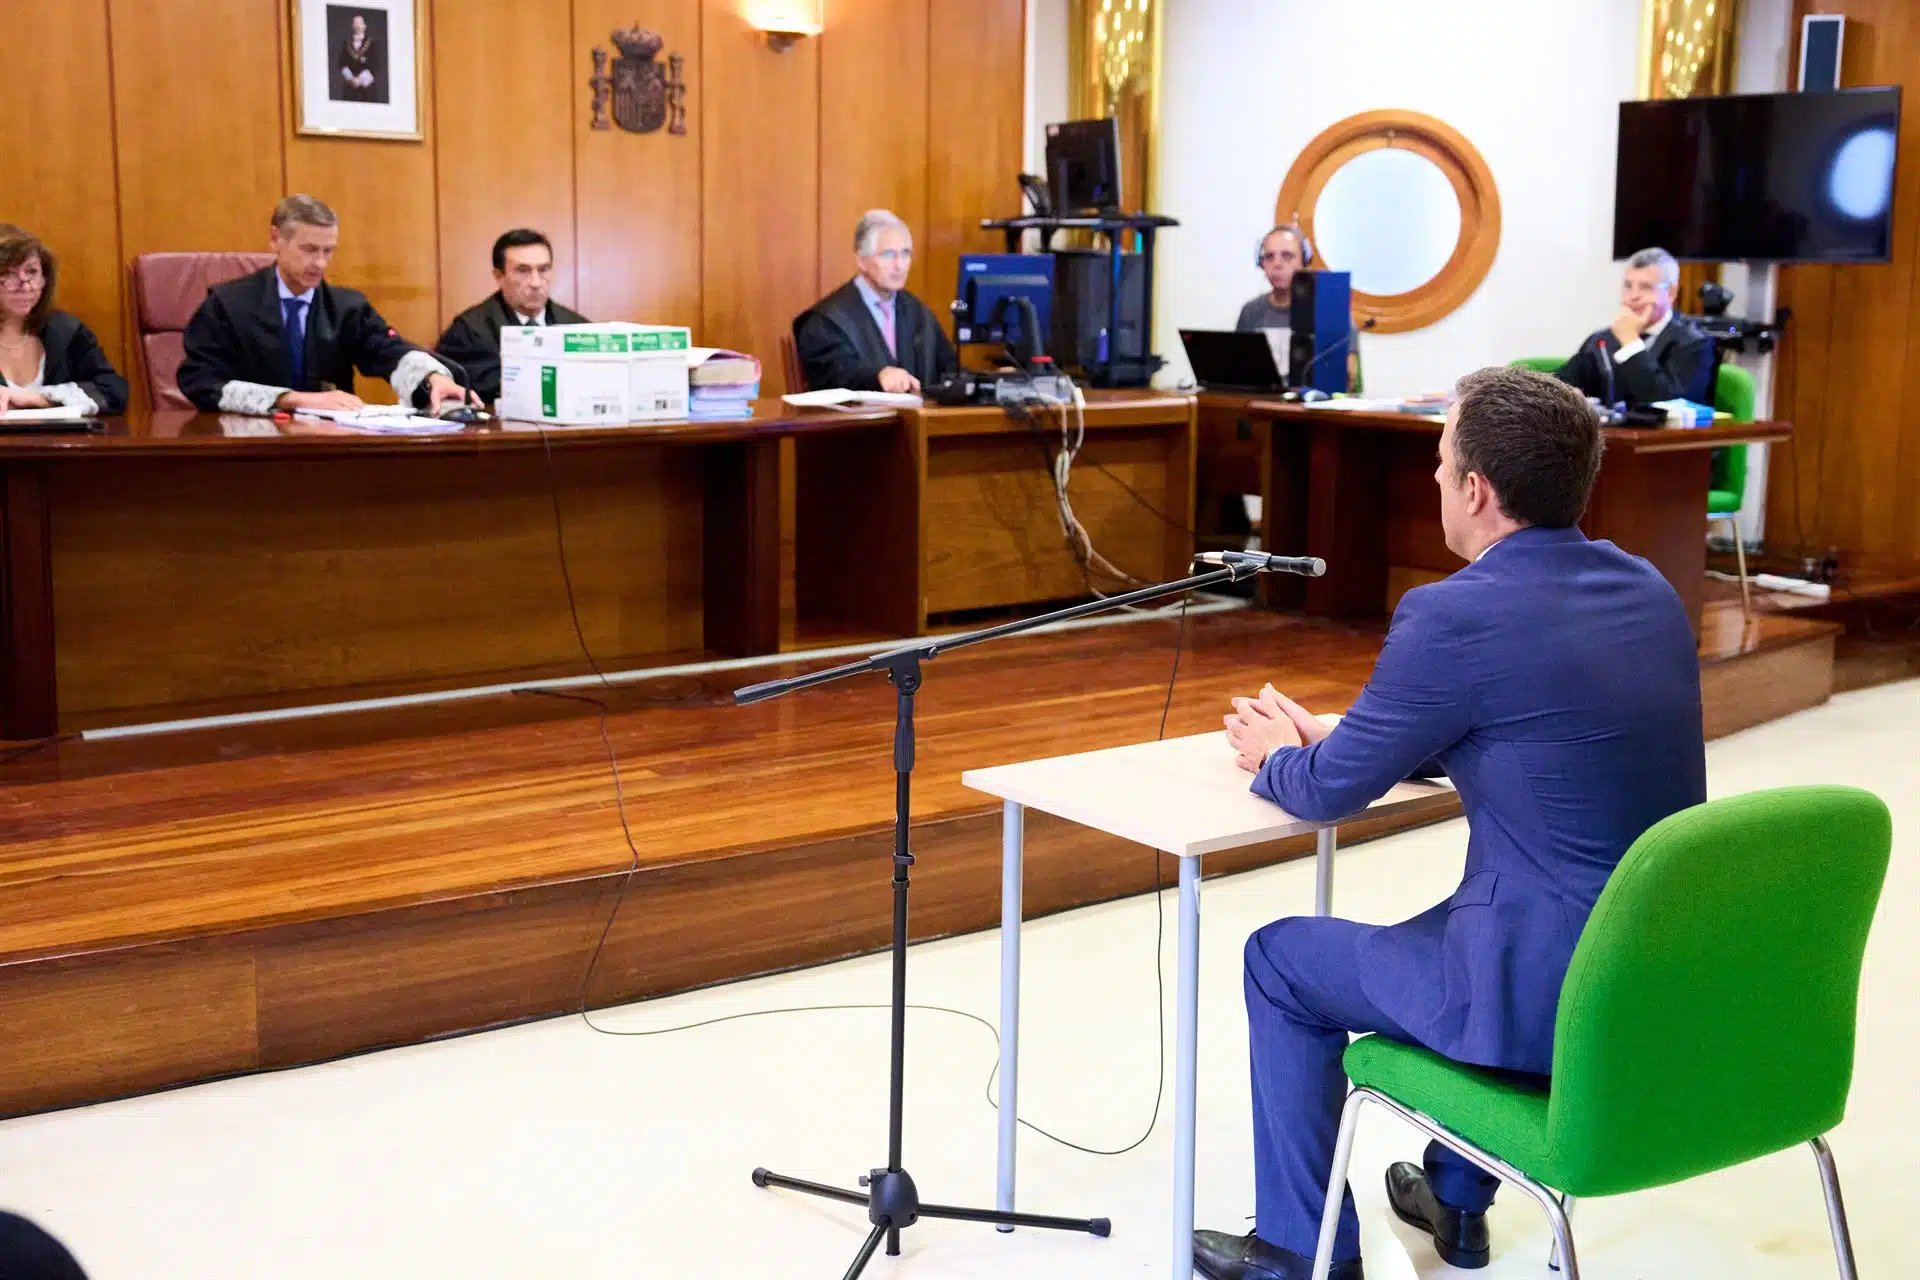 El TSJ de Cantabria condena a un juez a 5 años de inhabilitación por dictar resoluciones contra un abogado que se querelló contra él